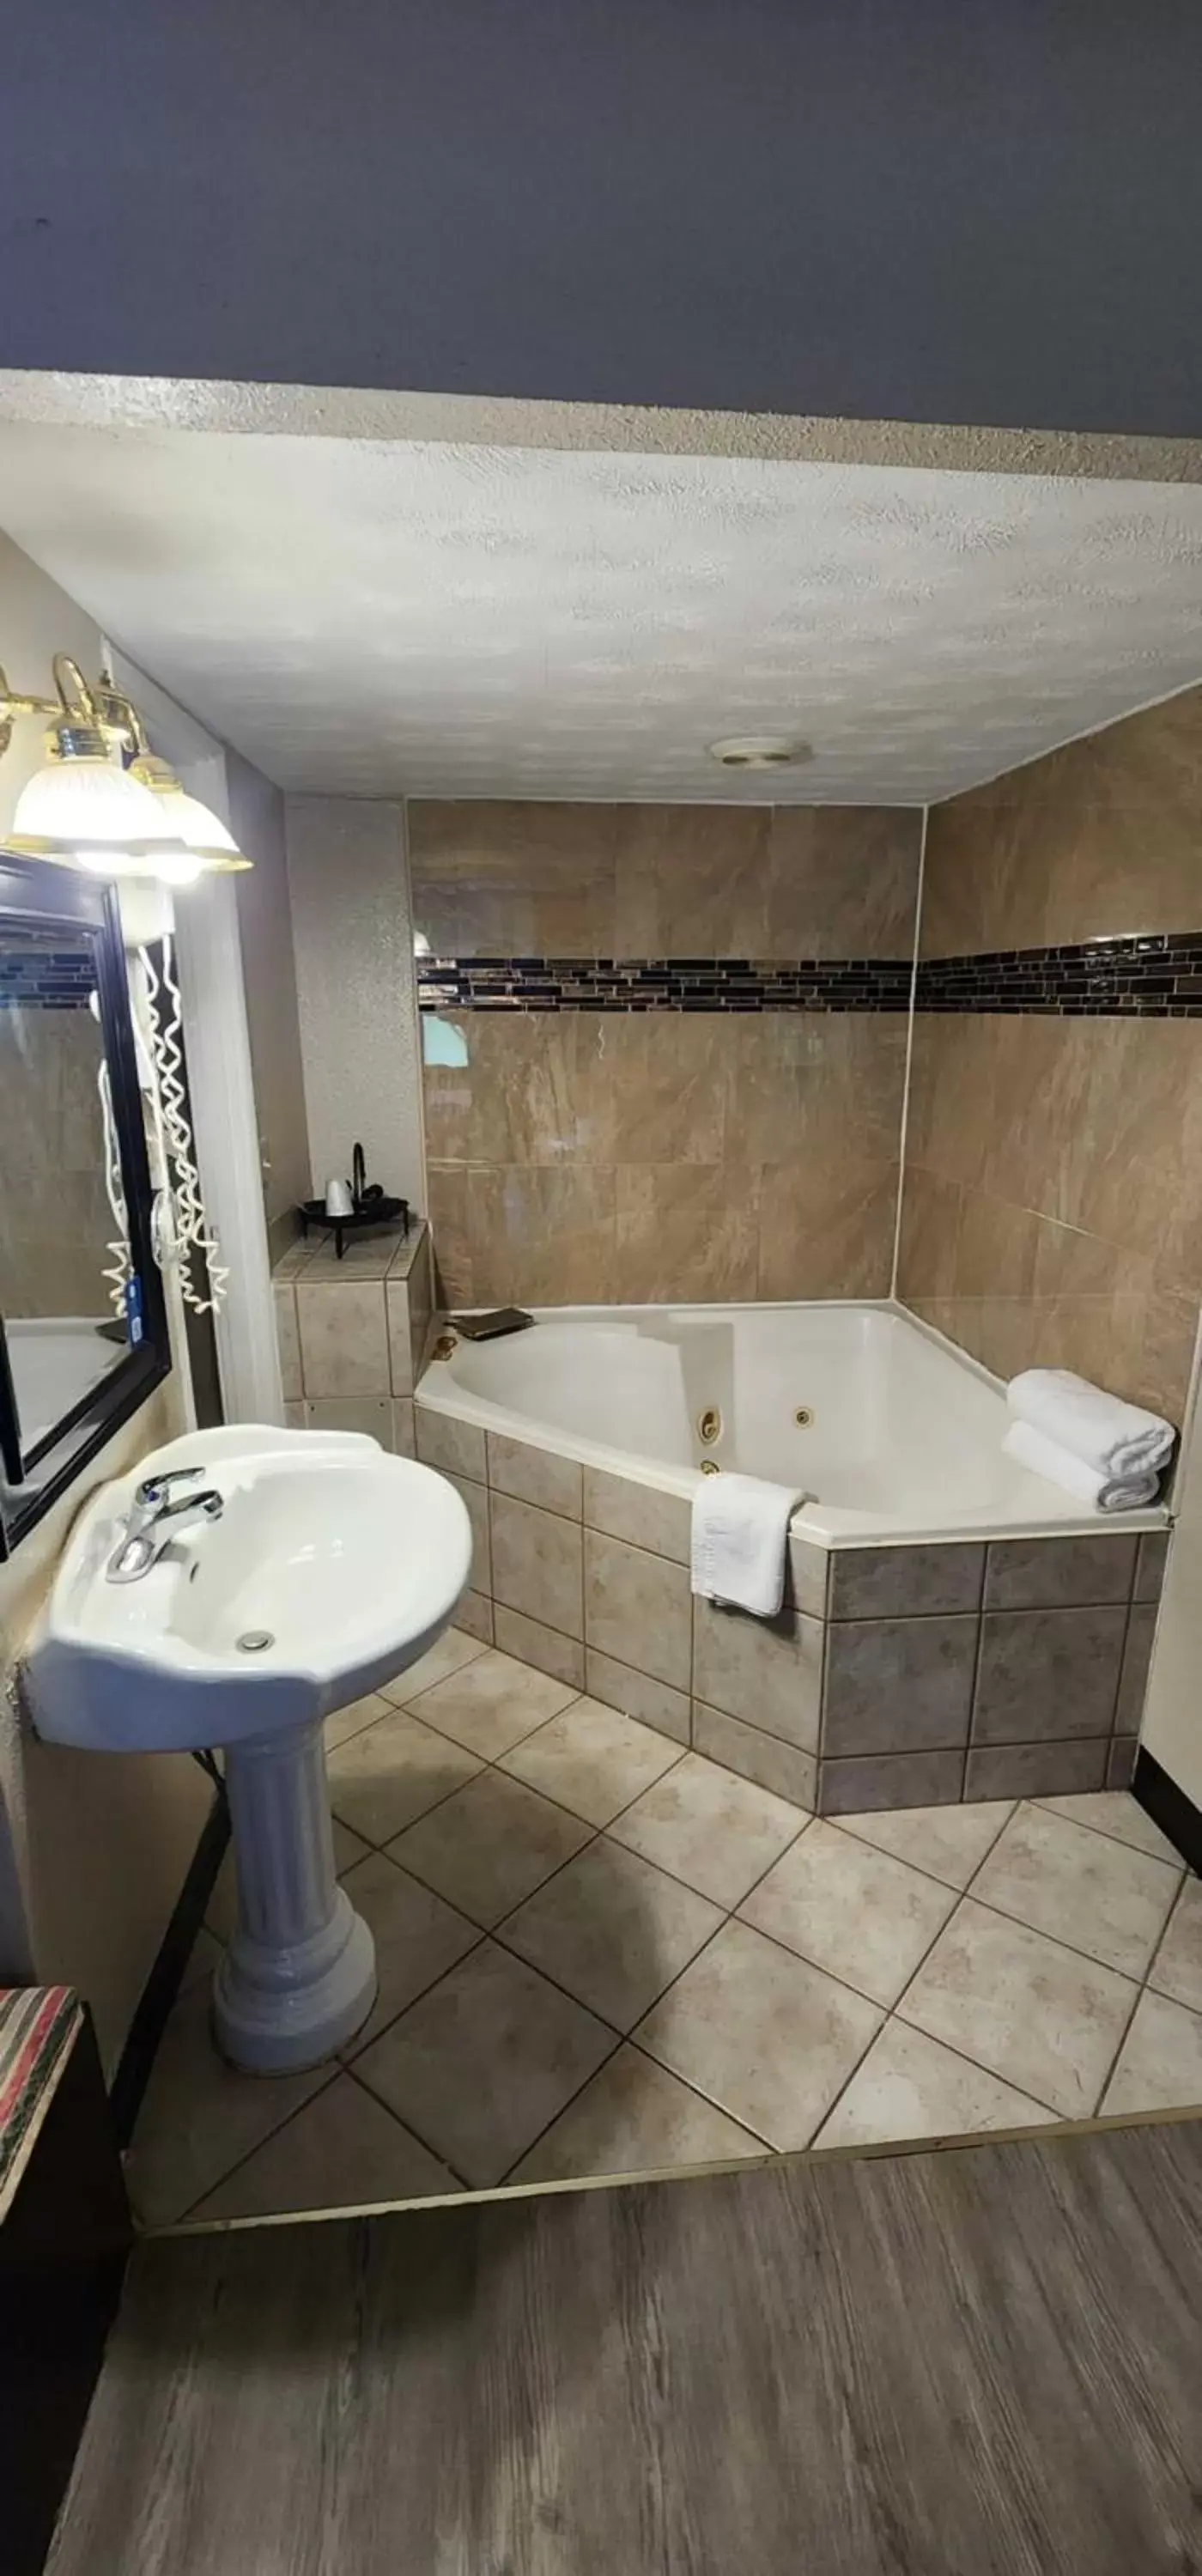 Bathroom in Days Inn by Wyndham Fort Wright Cincinnati Area